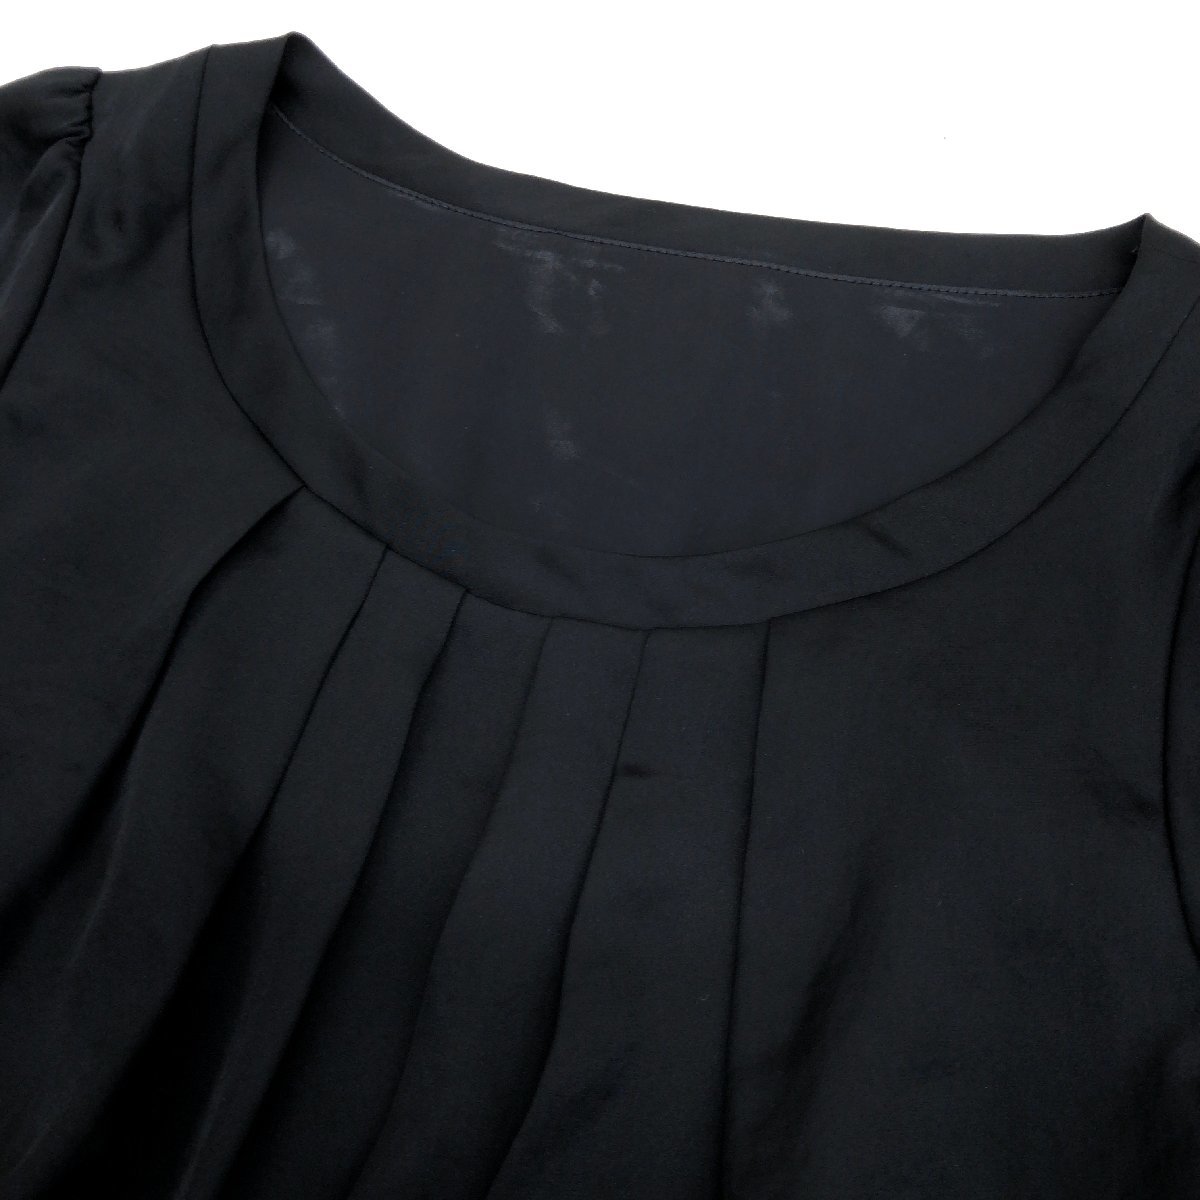 美品 INED イネド シアースリーブ レイヤード ドレス ワンピース 9(M) 黒 ブラック 日本製 半袖 国内正規品 レディース 女性用_画像4